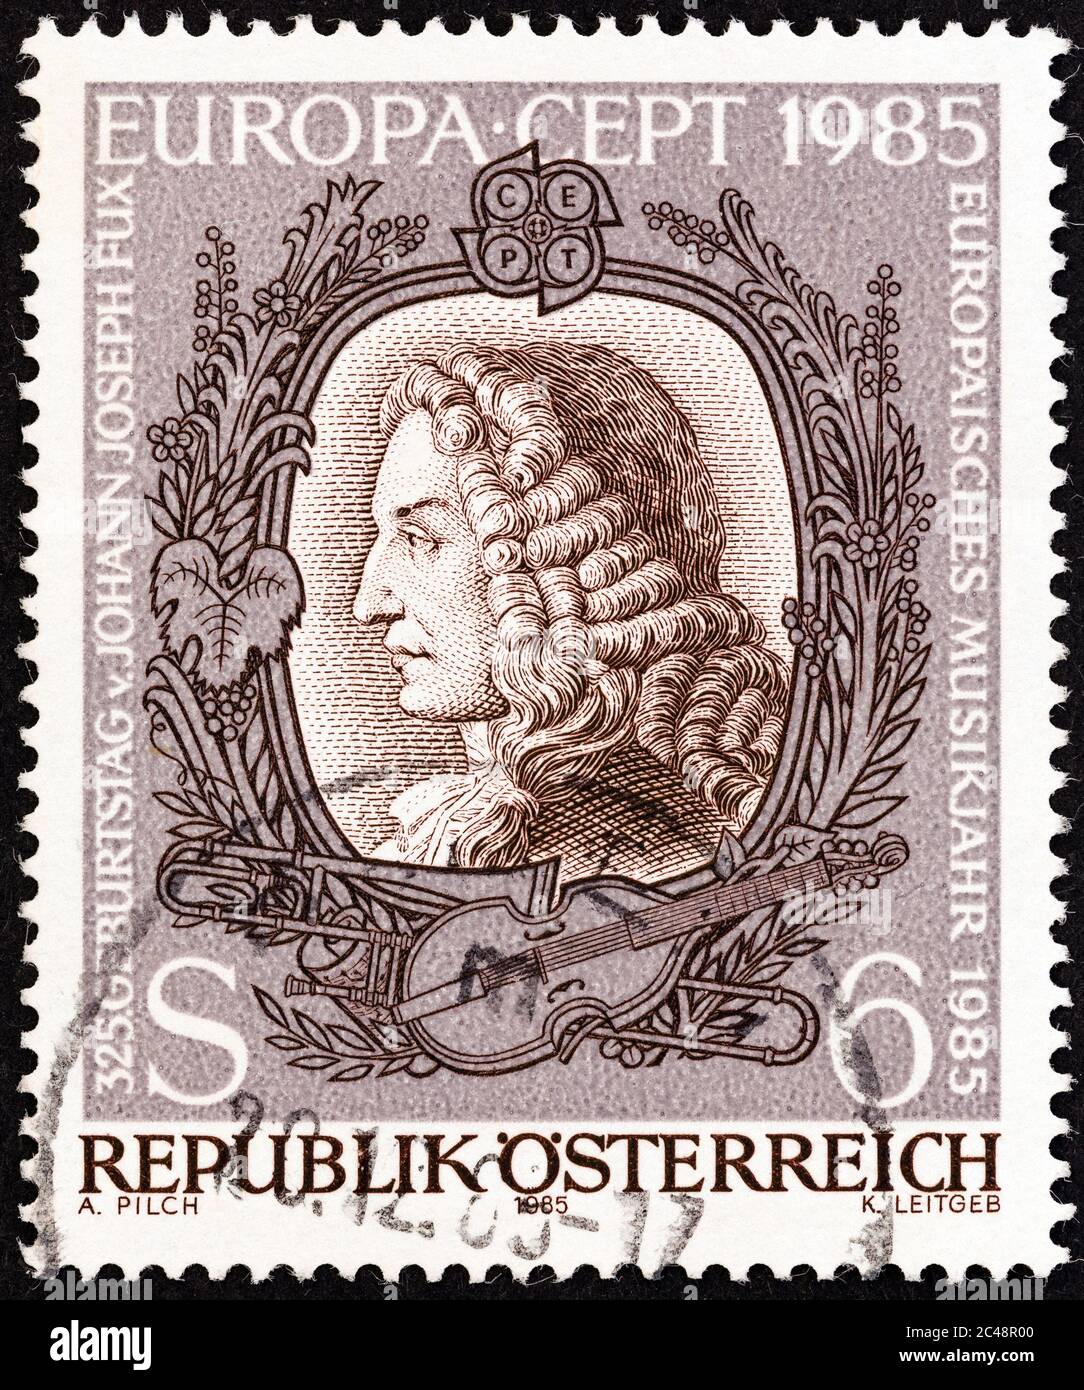 ÖSTERREICH - UM 1985: Eine in Österreich gedruckte Briefmarke aus der 'Europa. Die Ausgabe des Musikjahres zeigt Johann Joseph Fux (Komponist), um 1985. Stockfoto